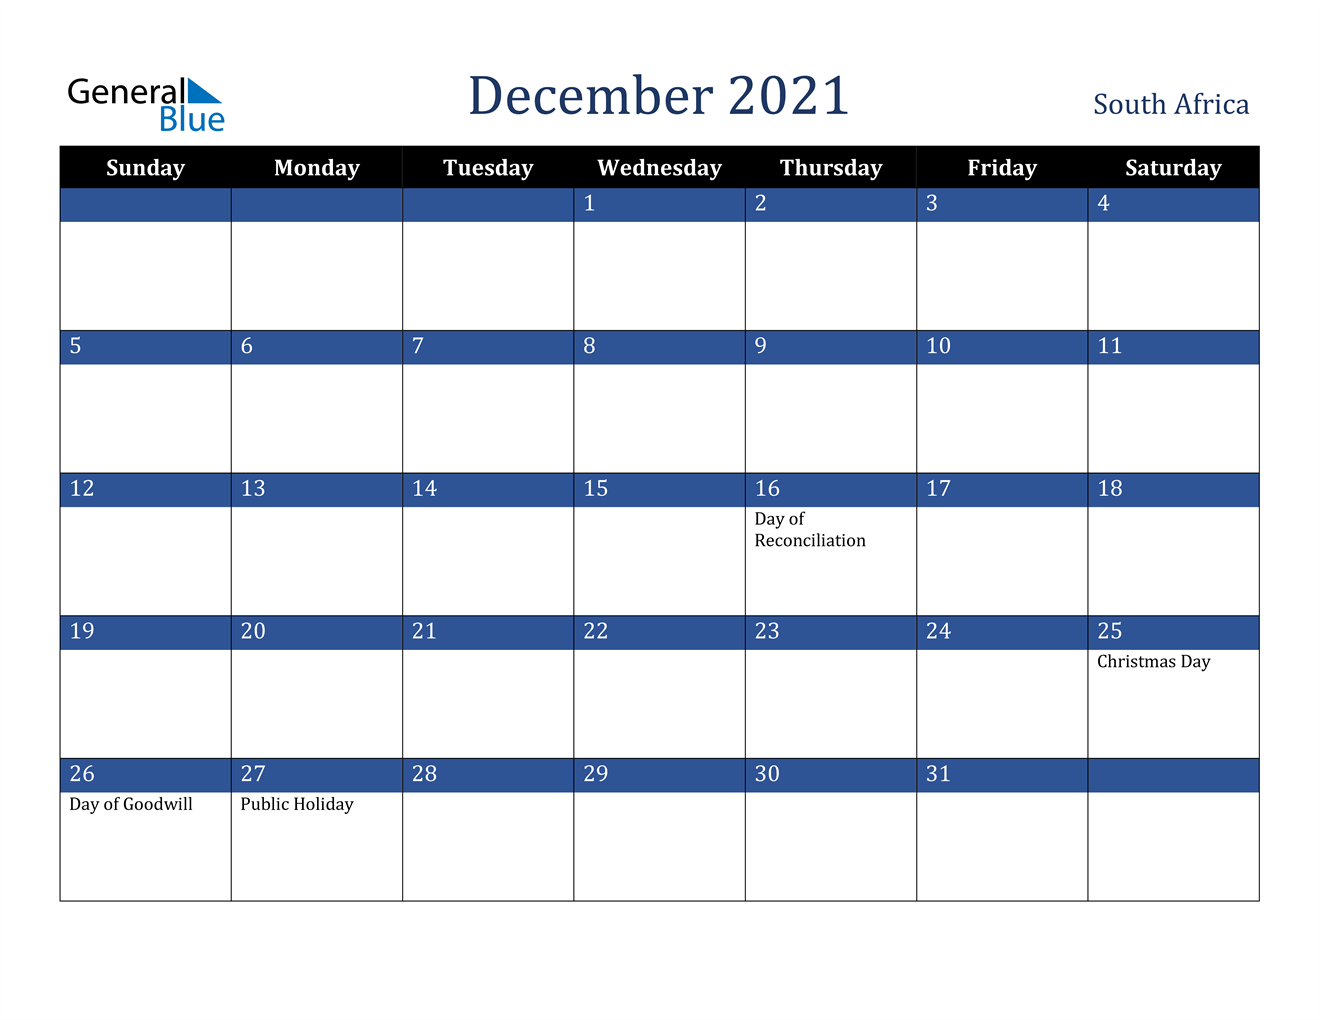 December 2021 Calendar - South Africa